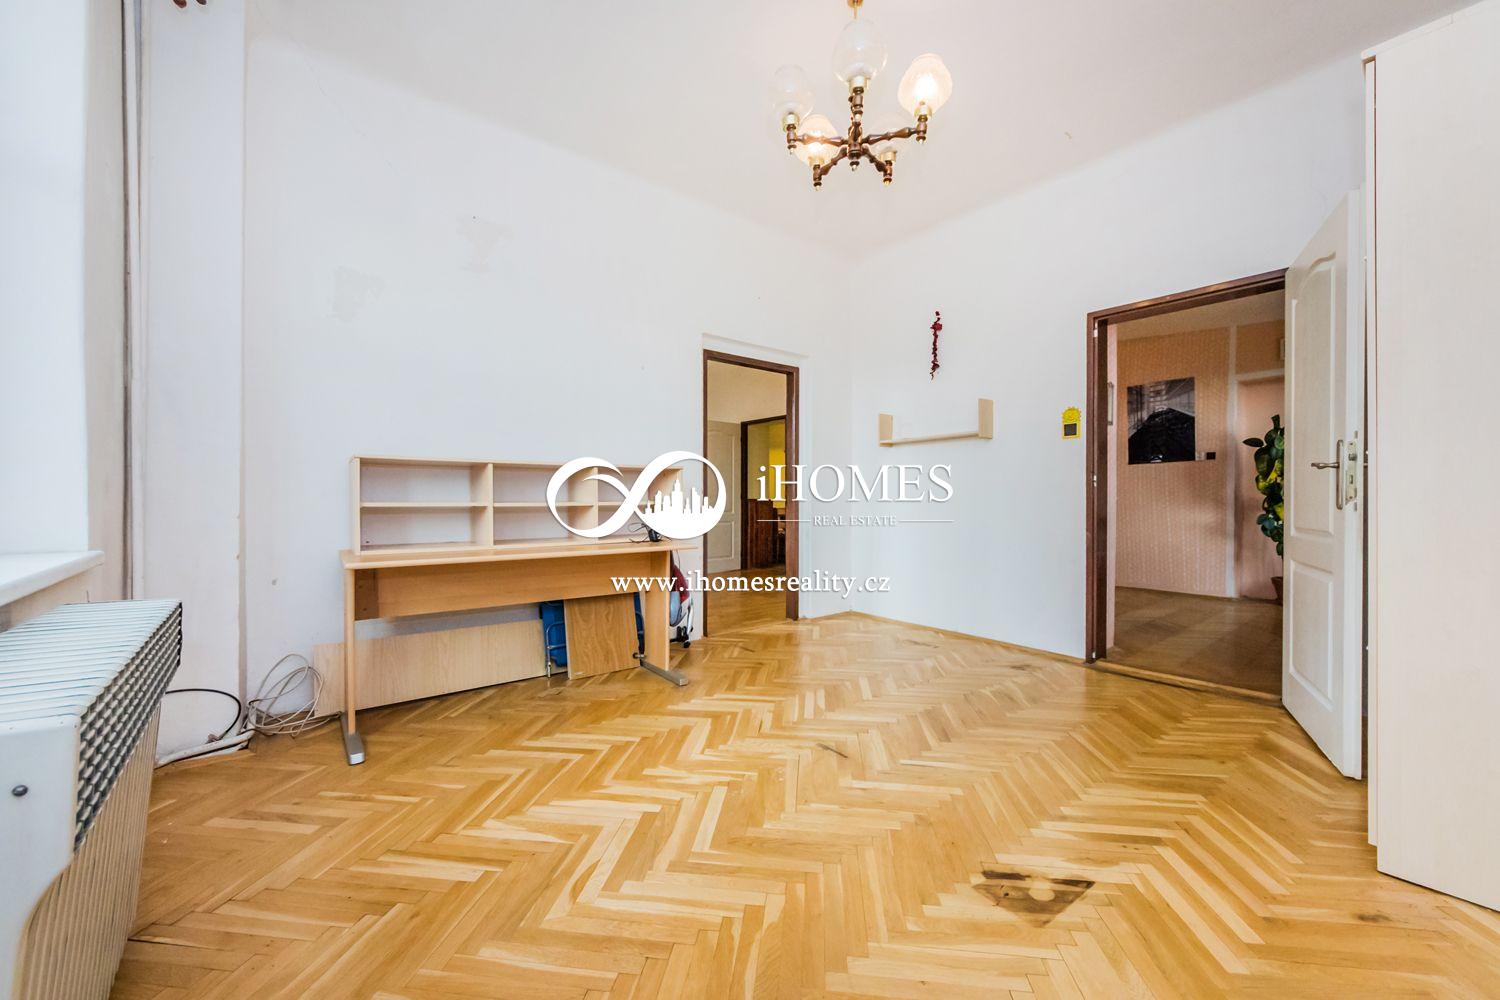 Na prodej ČD 19 bytu a kancelař 1400m2 bytové plochy pozemek 600 m2 Praha 7 Holešovice., obrázek č. 1